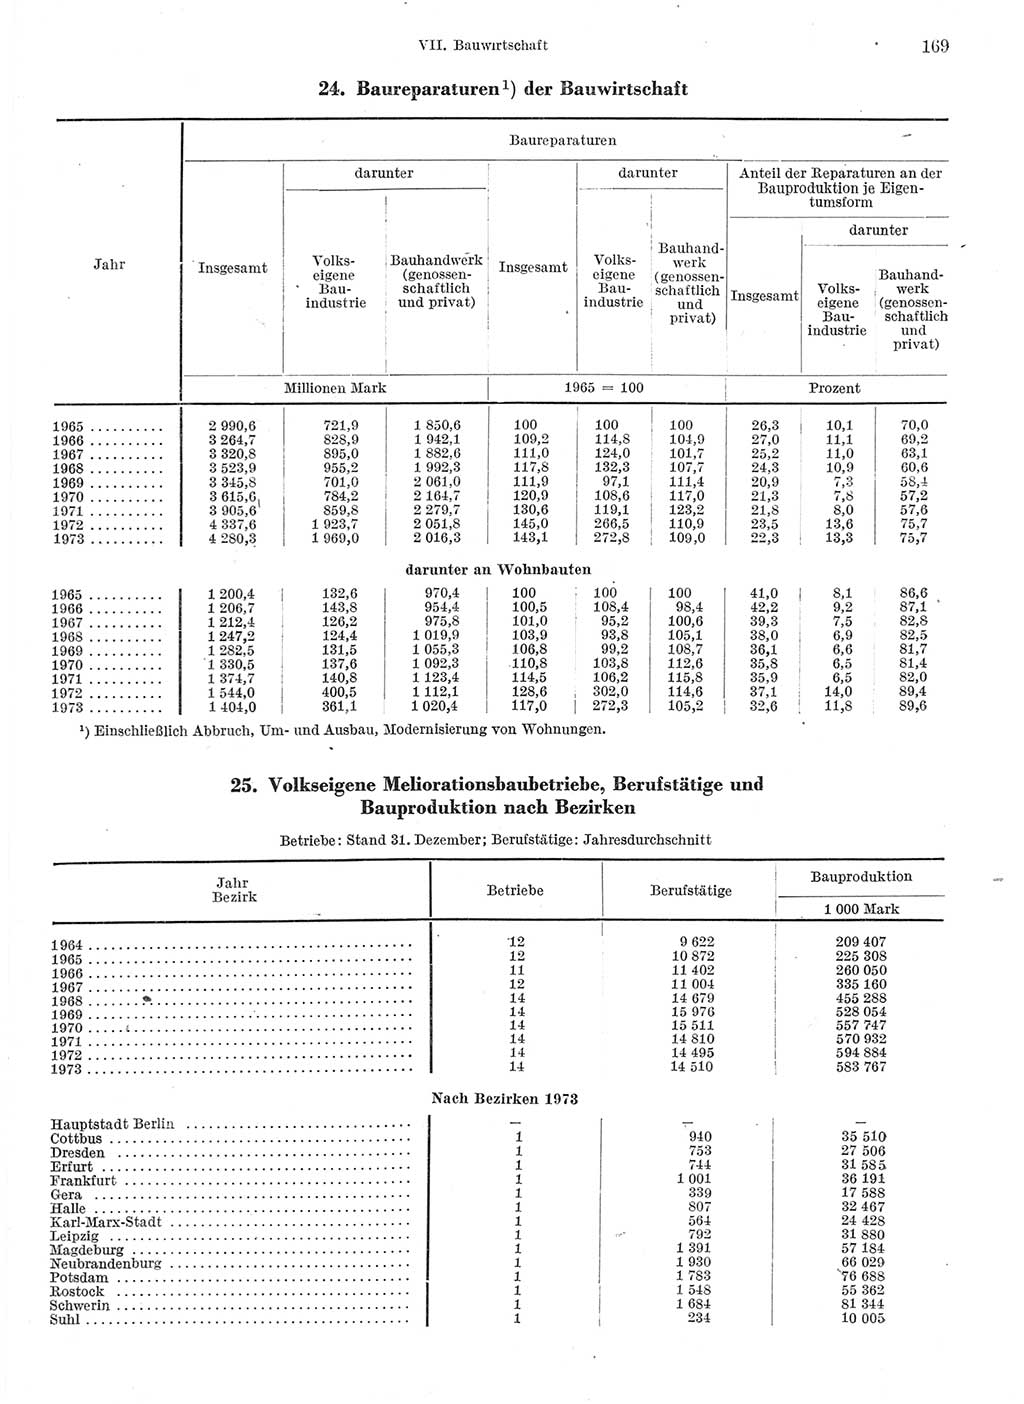 Statistisches Jahrbuch der Deutschen Demokratischen Republik (DDR) 1974, Seite 169 (Stat. Jb. DDR 1974, S. 169)